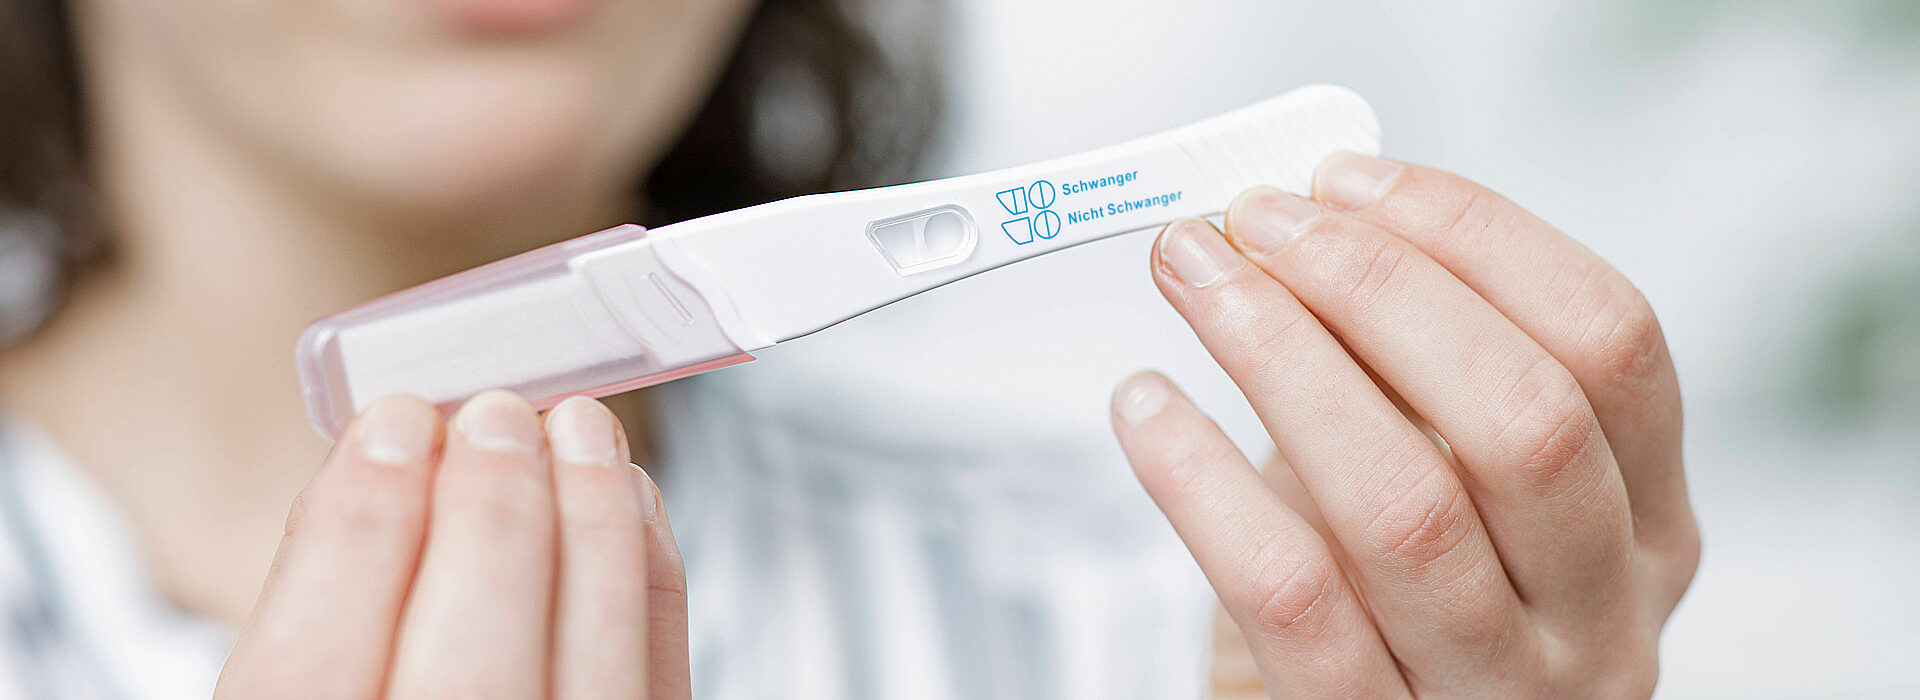 Foto: Schwangerschaftsberatung - Frau hält Schwangerschaftstest